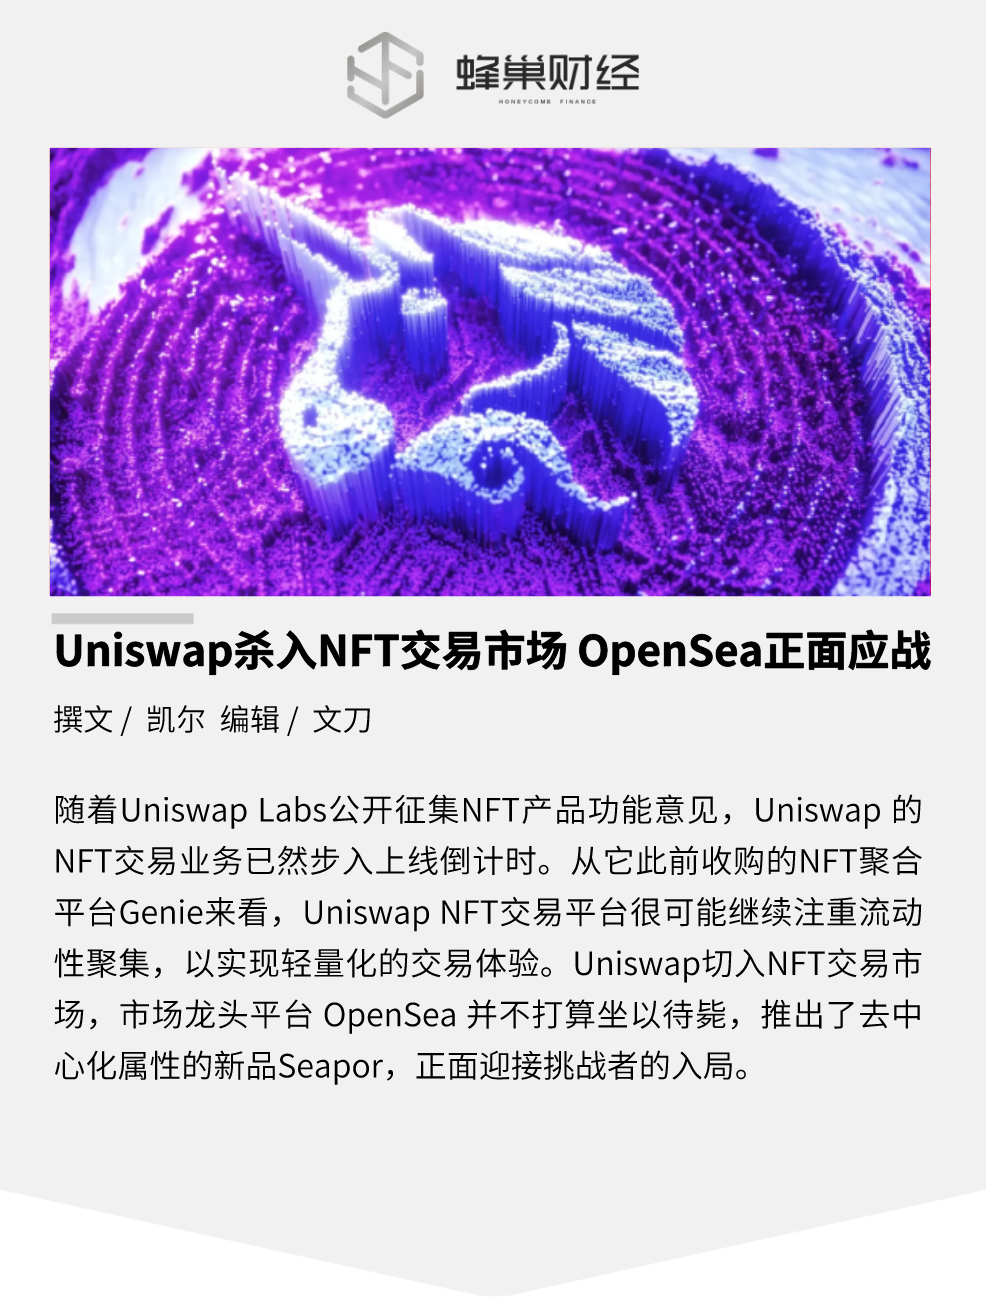 Uniswap 杀入 NFT 交易市场，OpenSea 正面应战